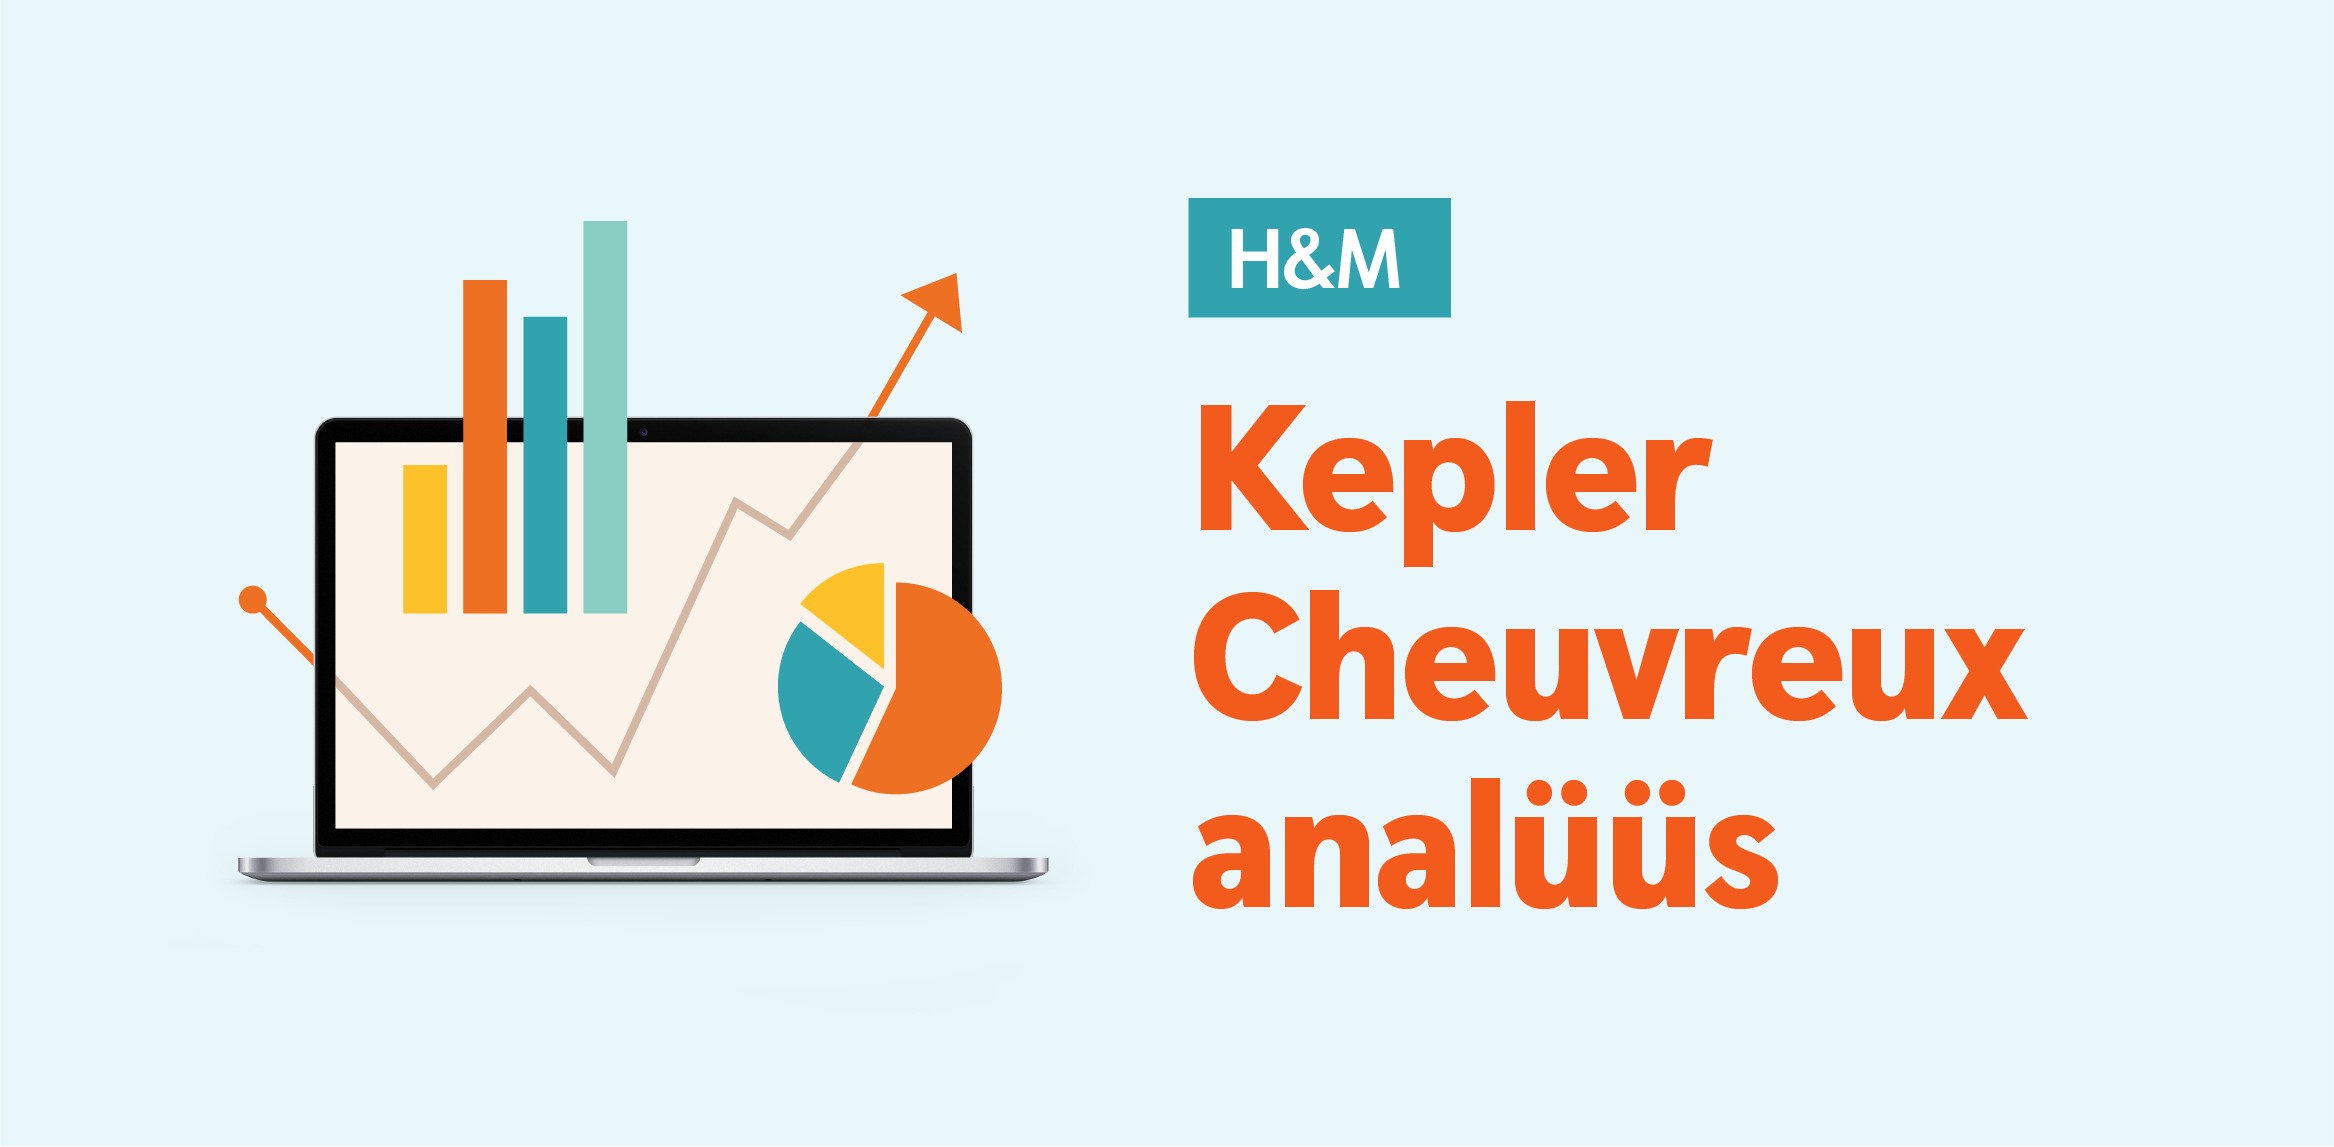 Kepler Cheuvreux: результаты H&M превзошли ожидания